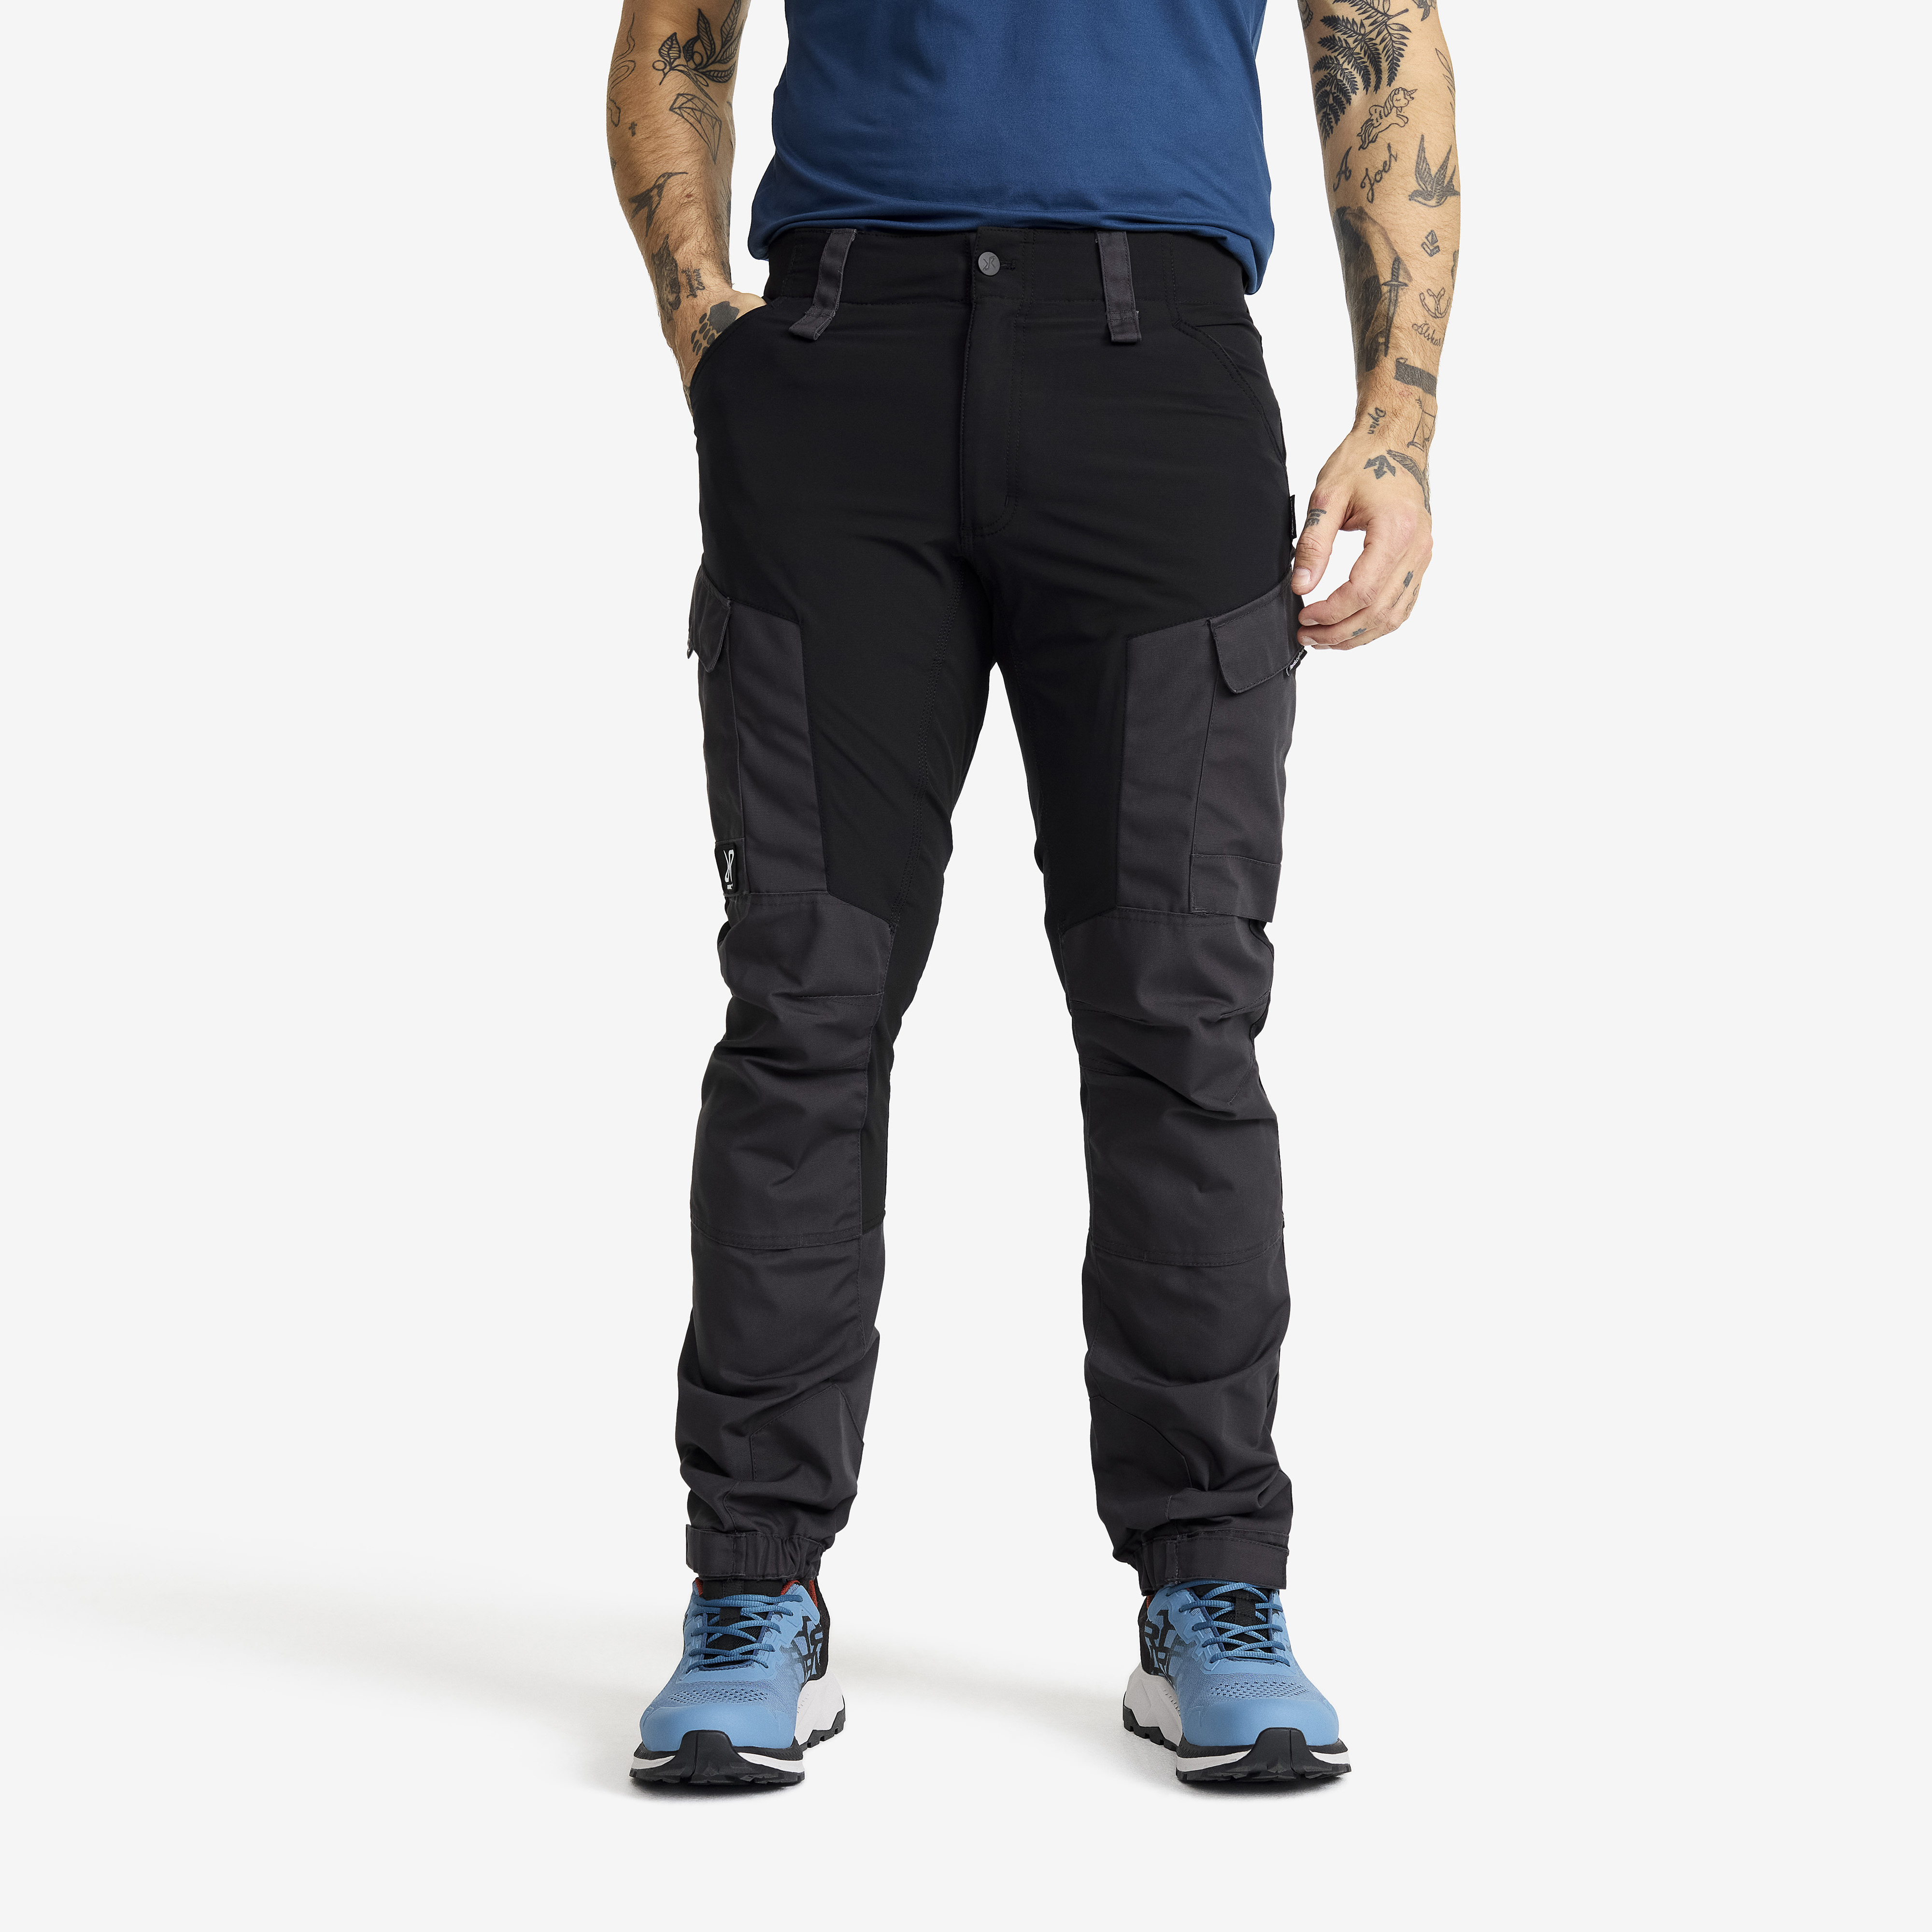 RVRC GP outdoor pants for men in black